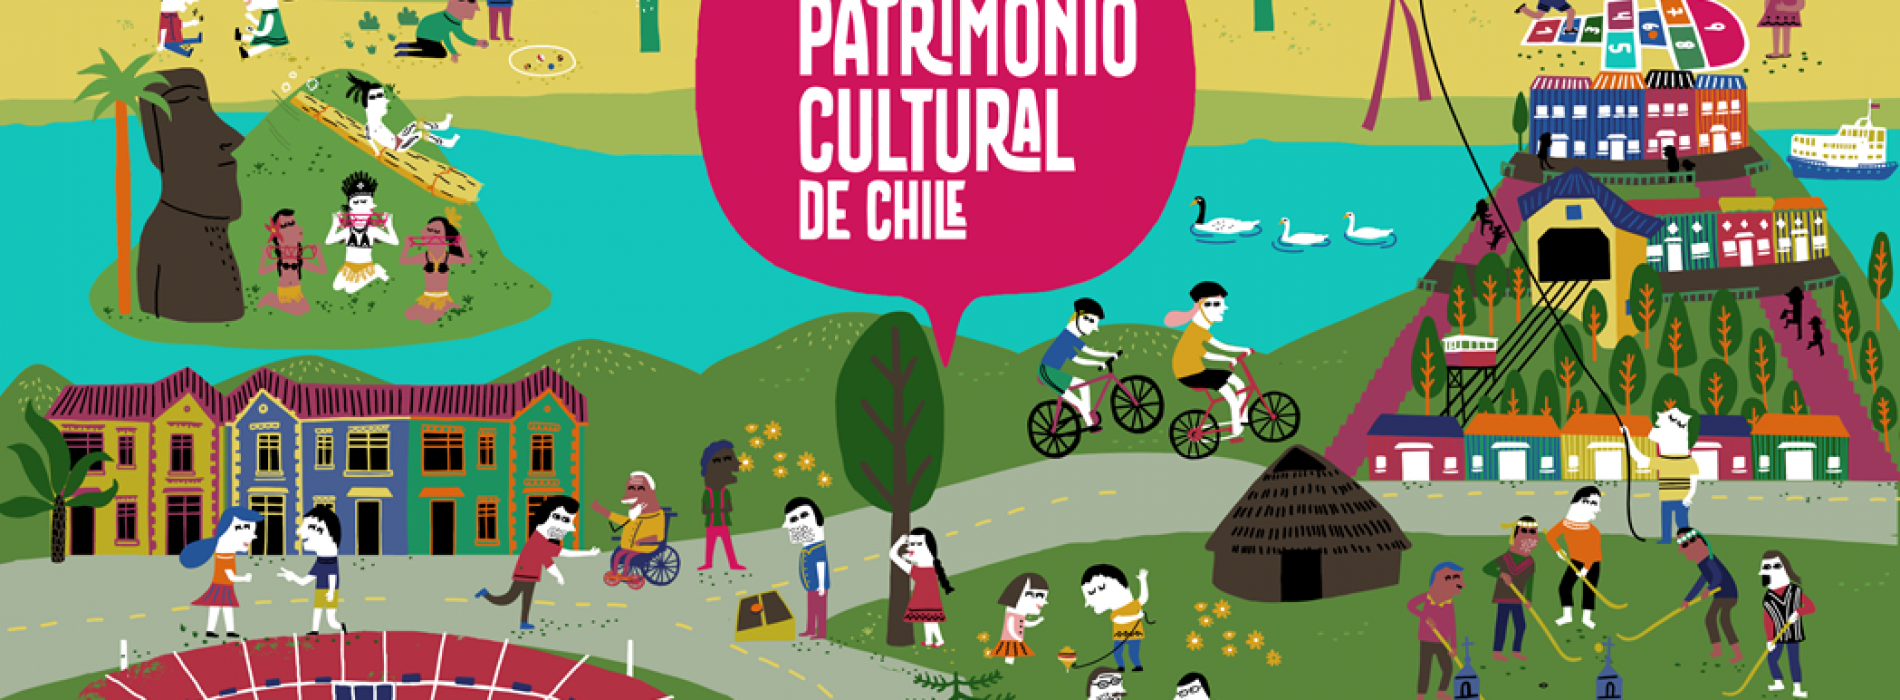 Esta fiesta patrimonial se celebra en Chile desde 1999. Este año fue la primera vez que el evento se extendió a dos días en lugar de uno.